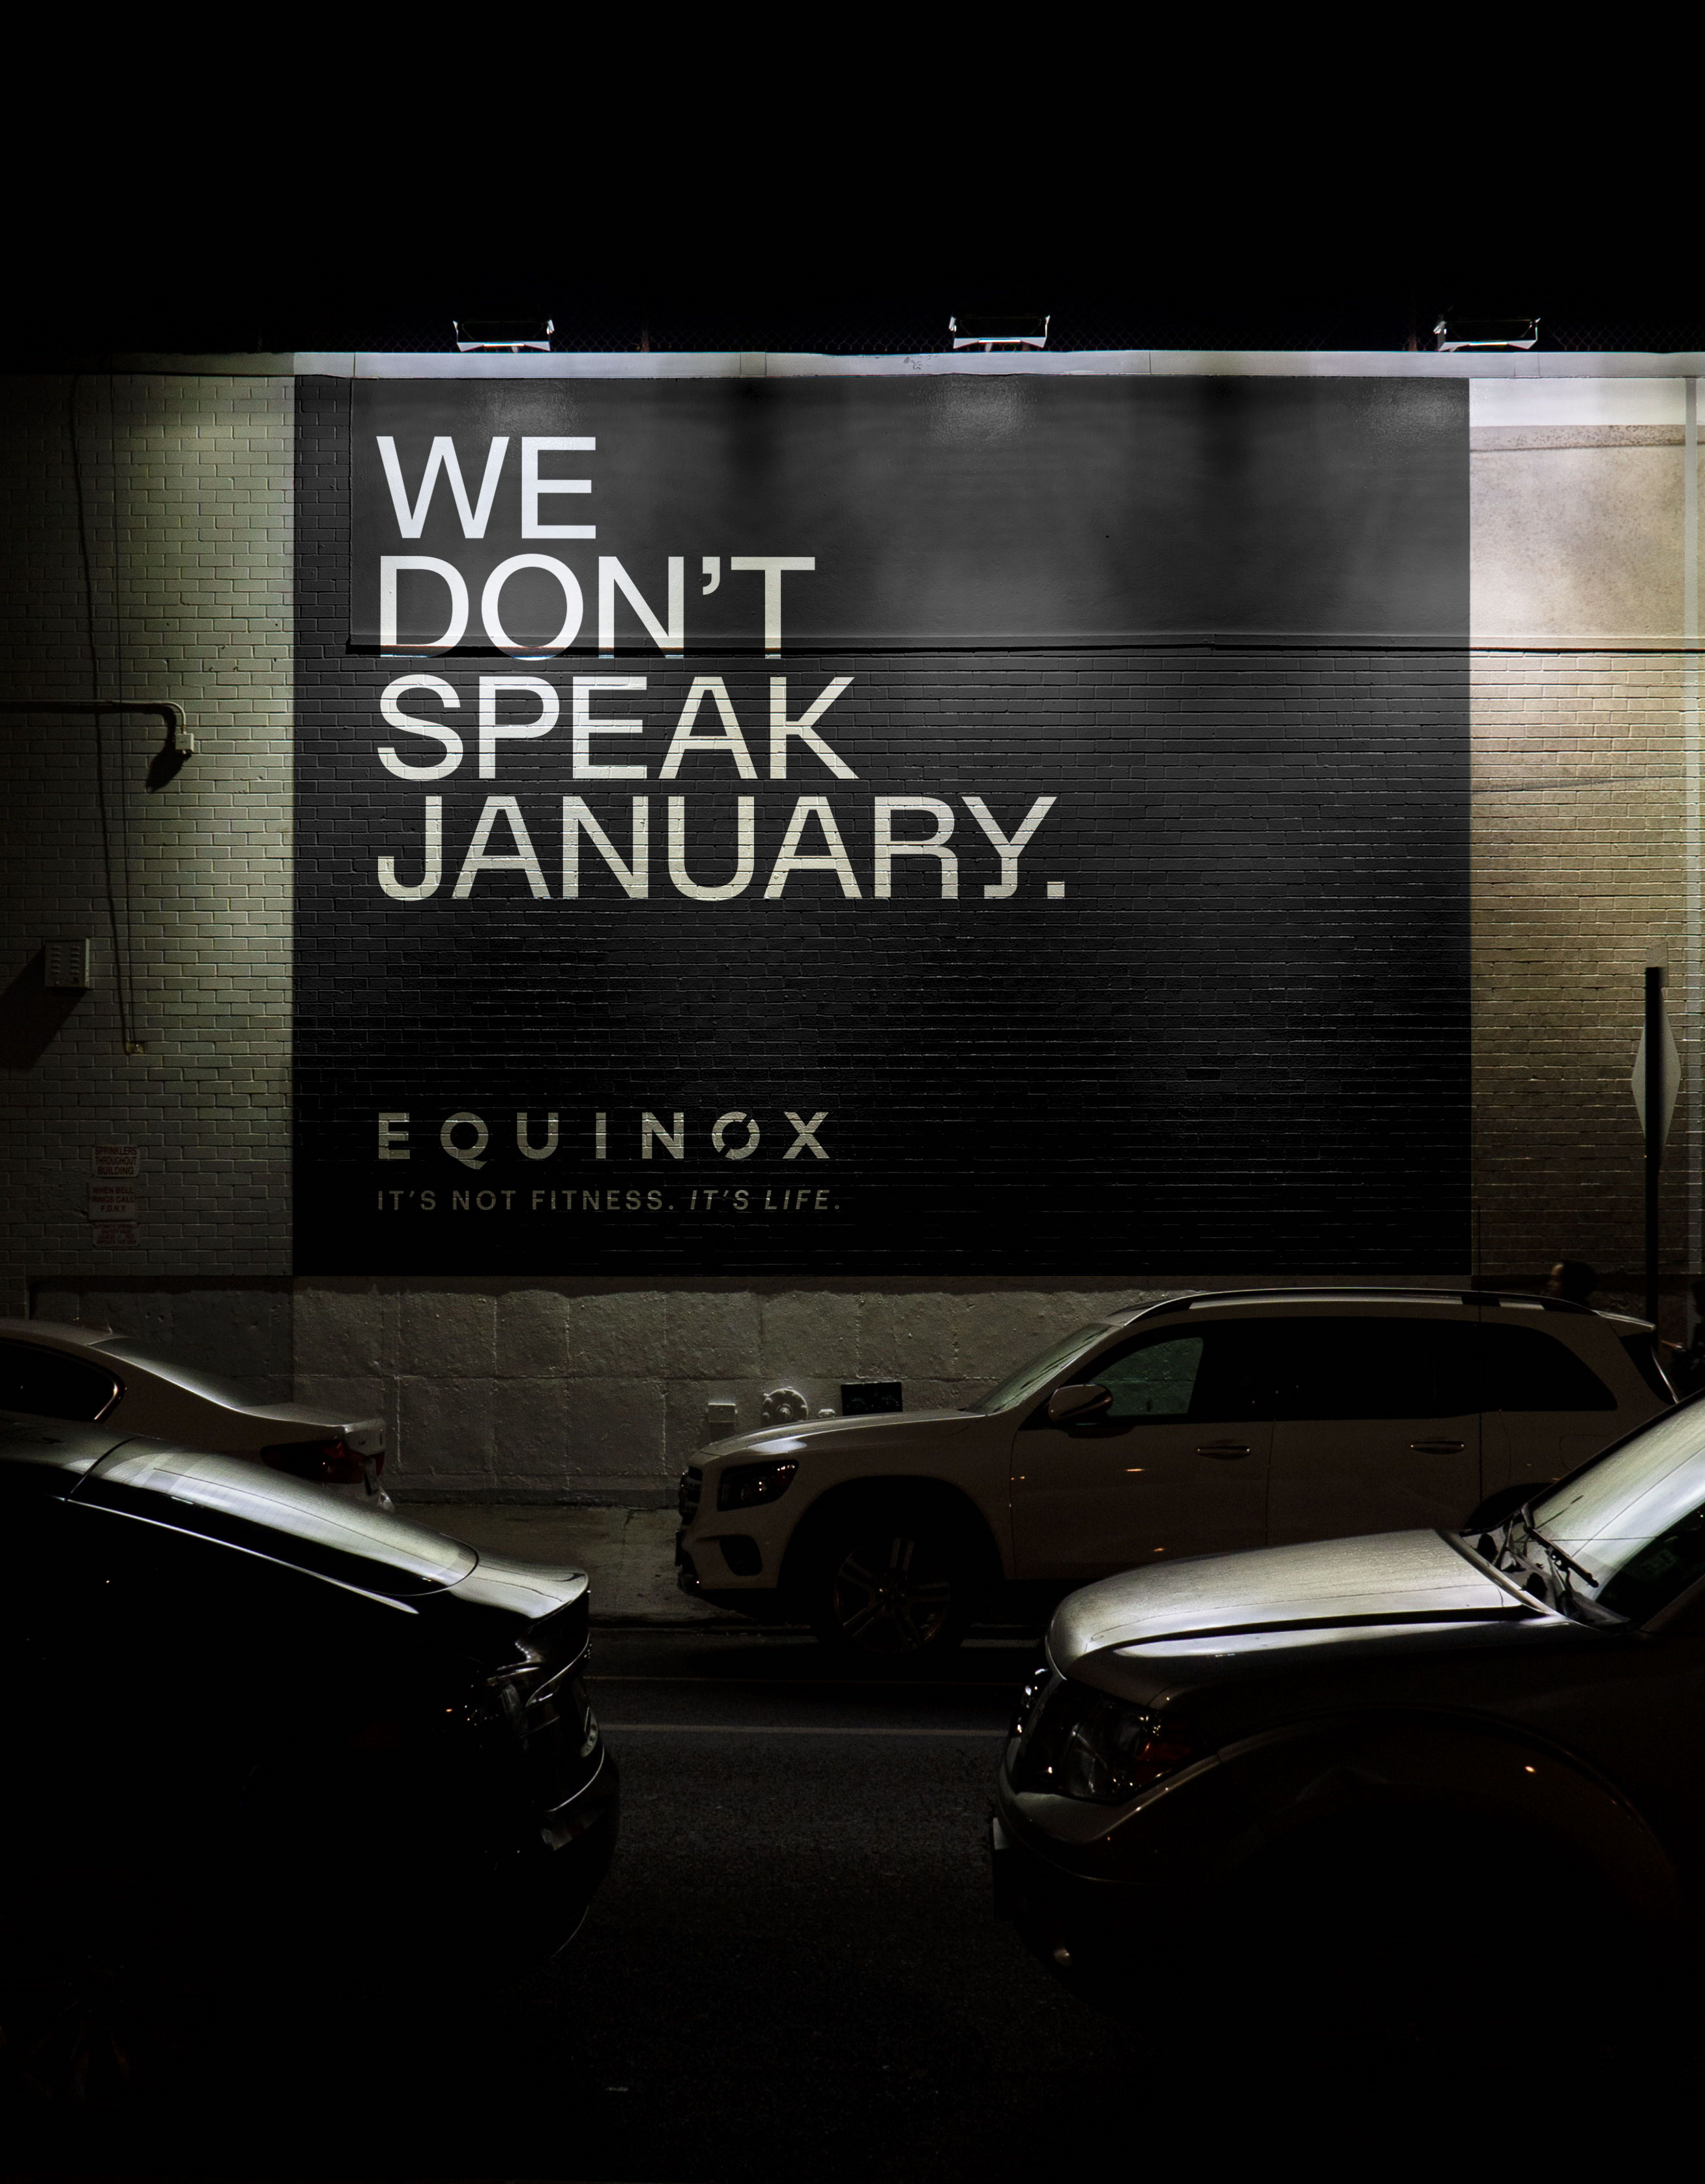 Equinox, Equinox - We Don't Speak January